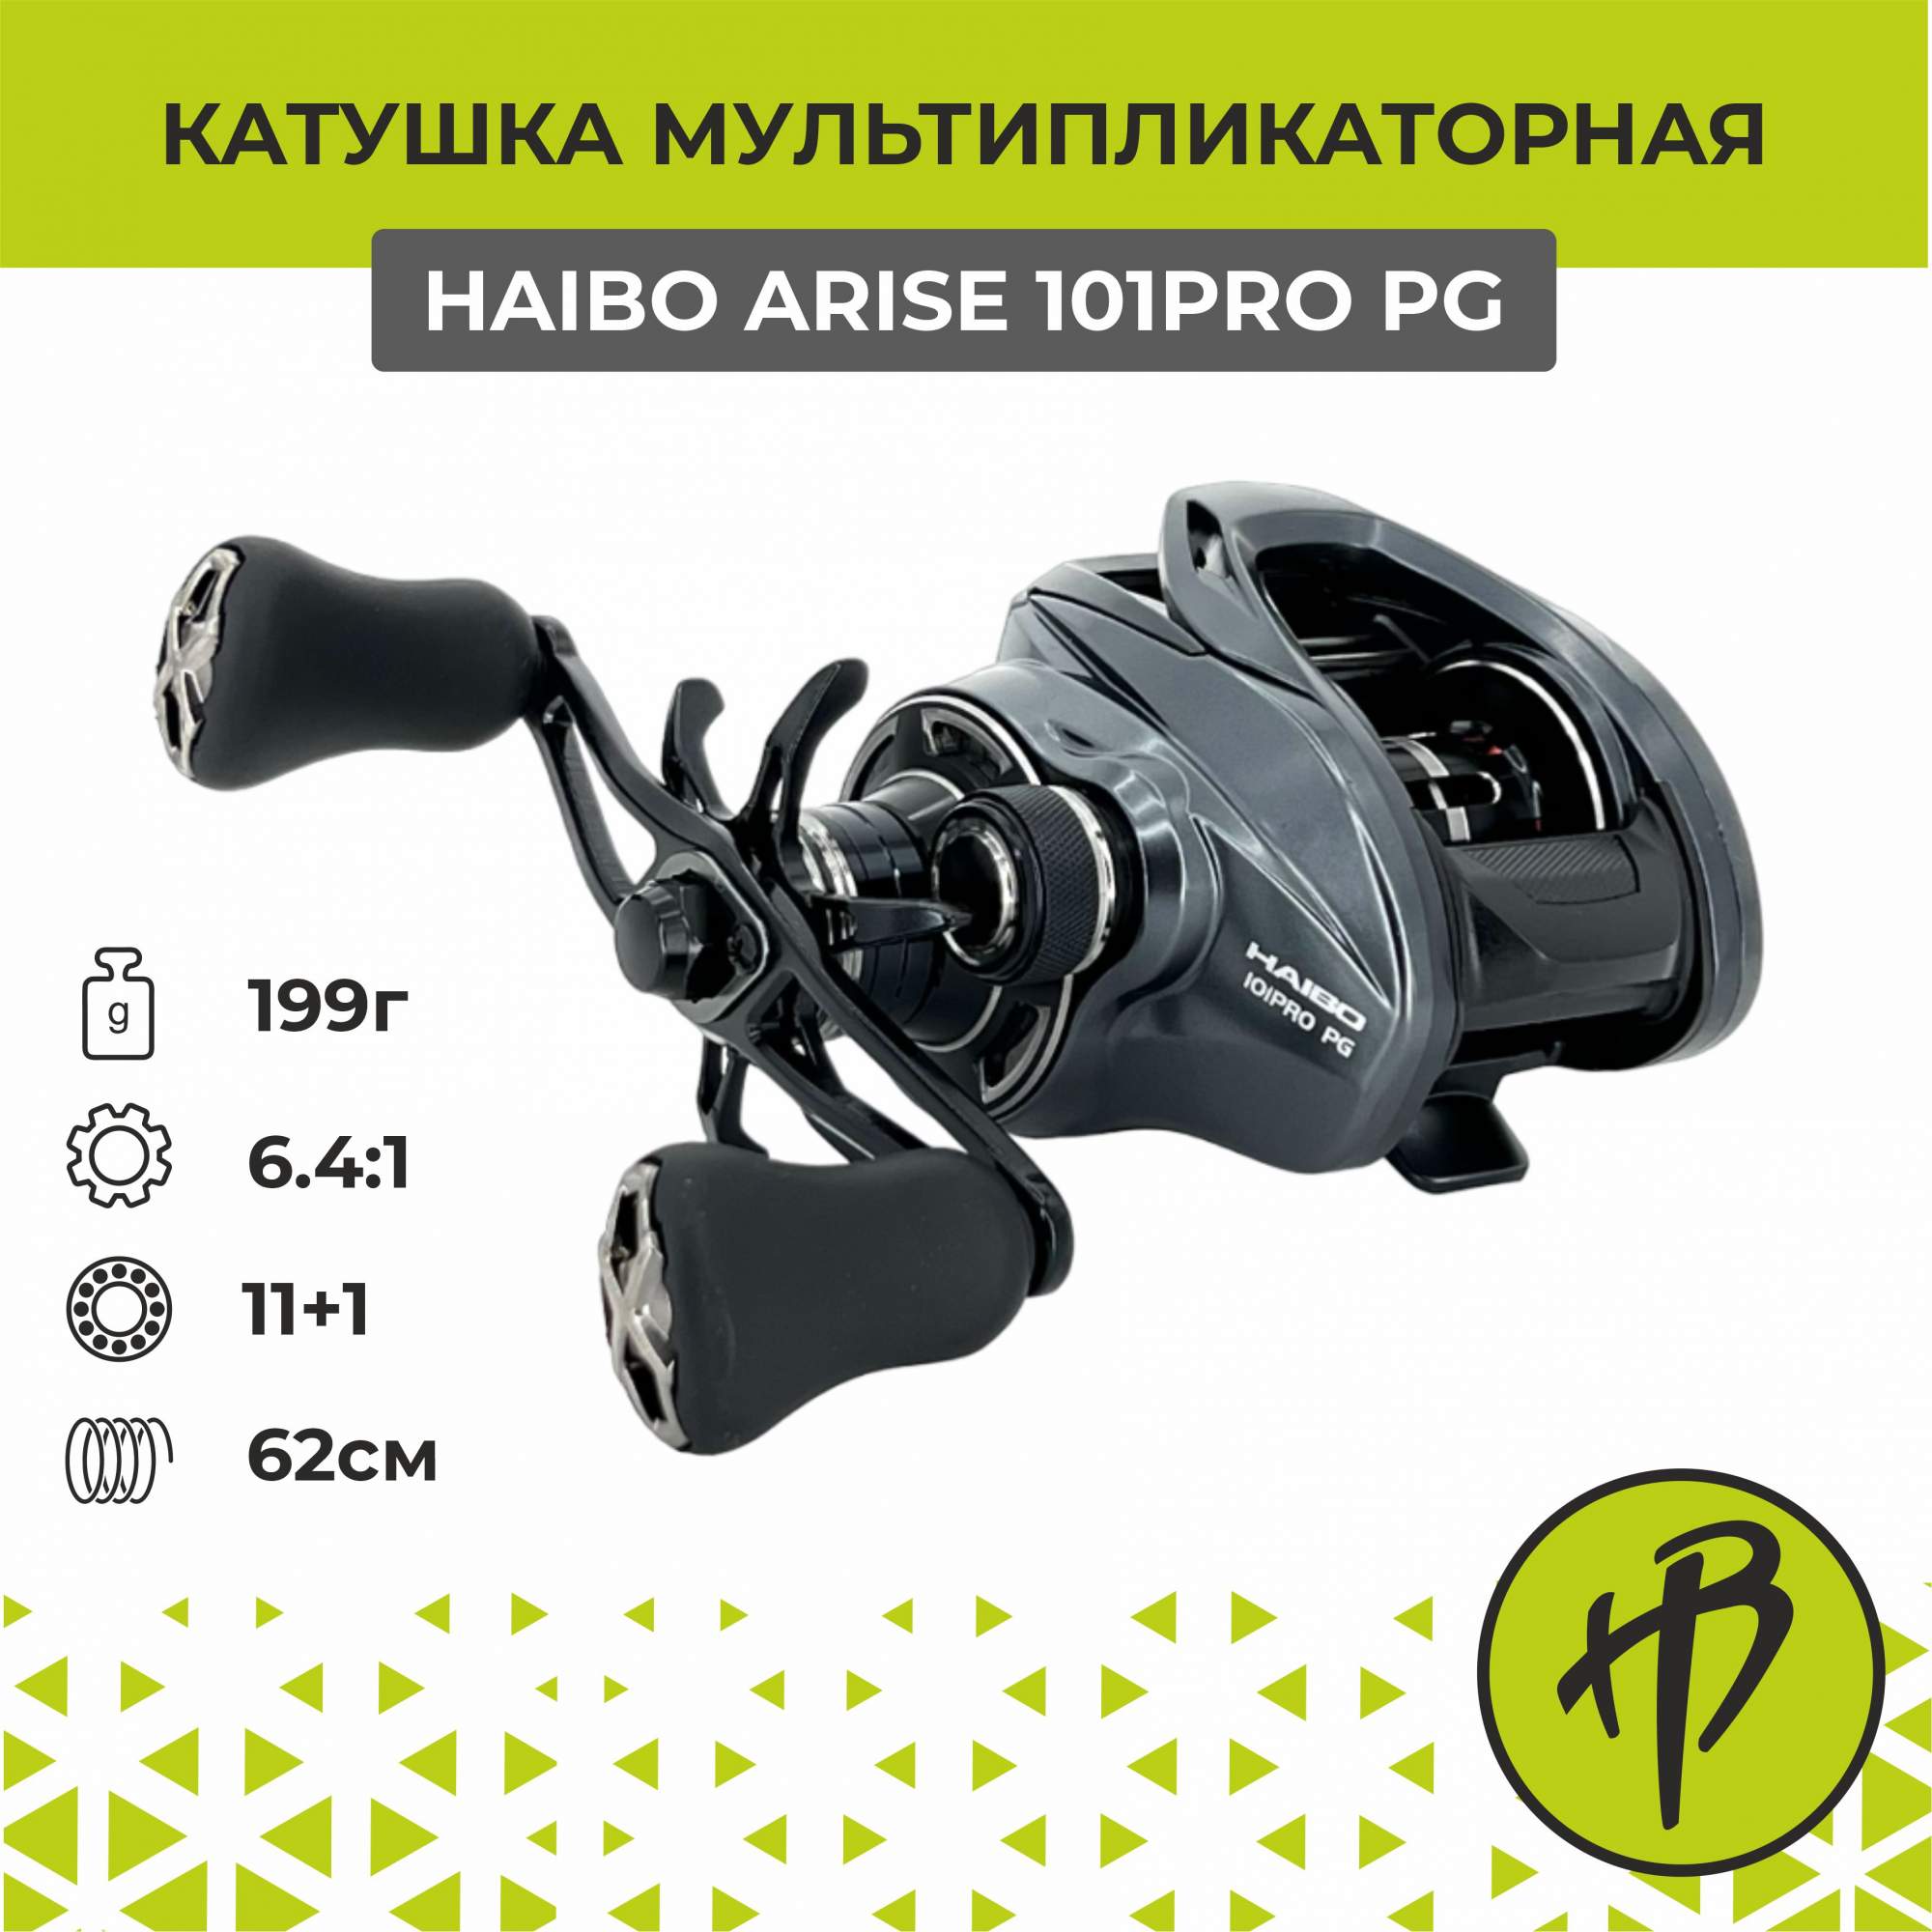 Мультипликаторная катушка Haibo Arise 101PRO PG AMC, под левую руку - купить в Москве, цены на Мегамаркет | 600015619582